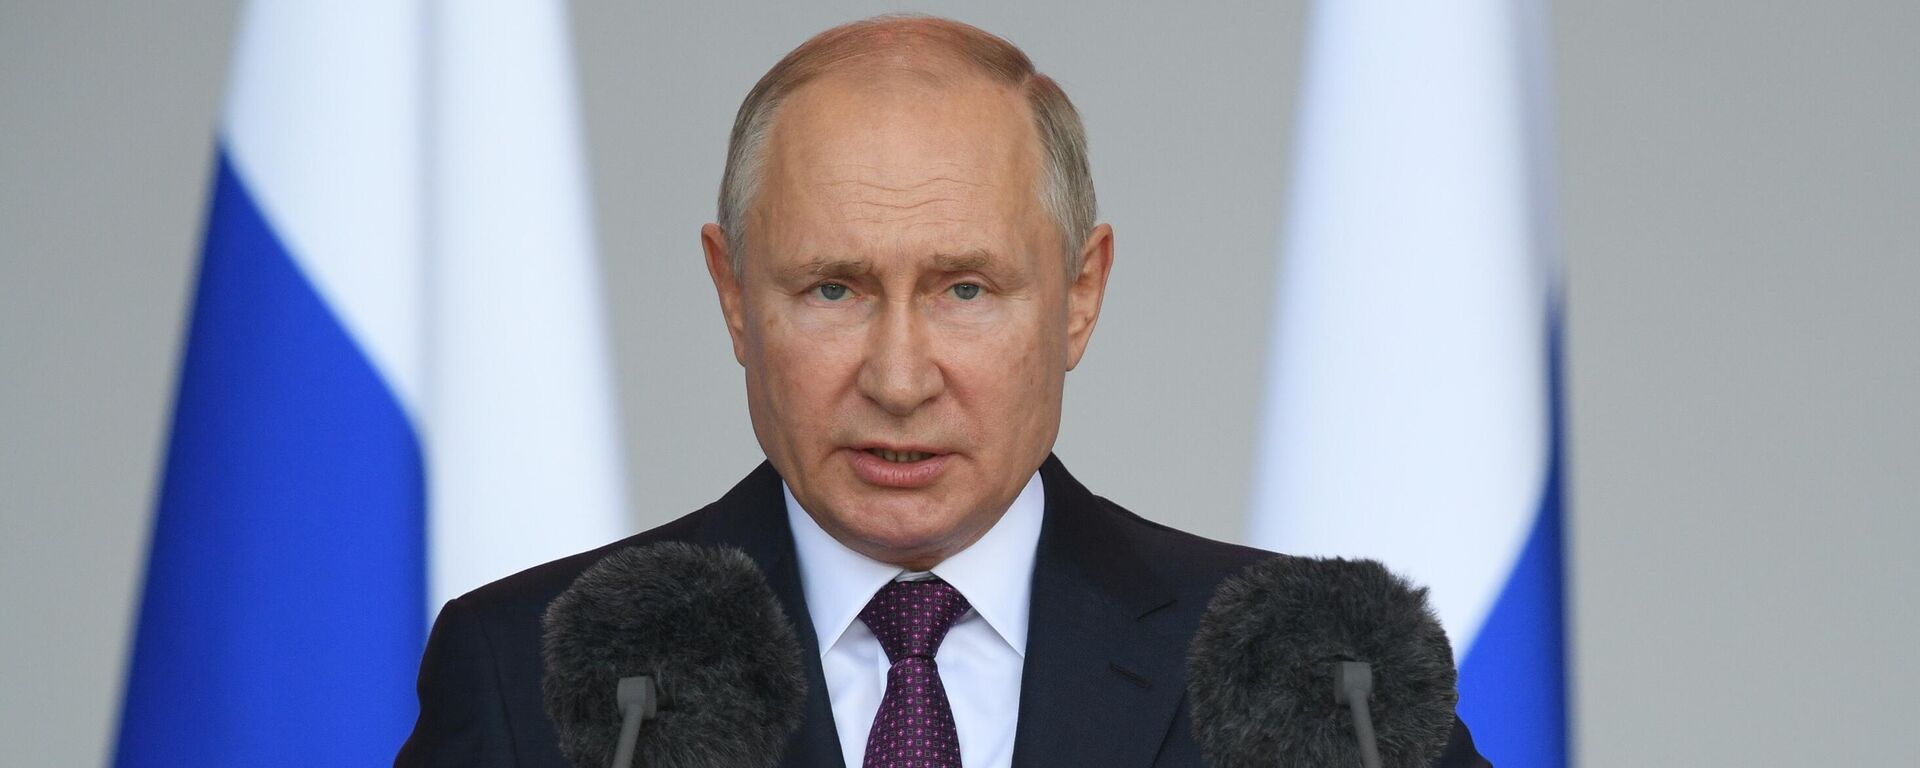 Президент РФ Владимир Путин - Sputnik Таджикистан, 1920, 20.12.2021